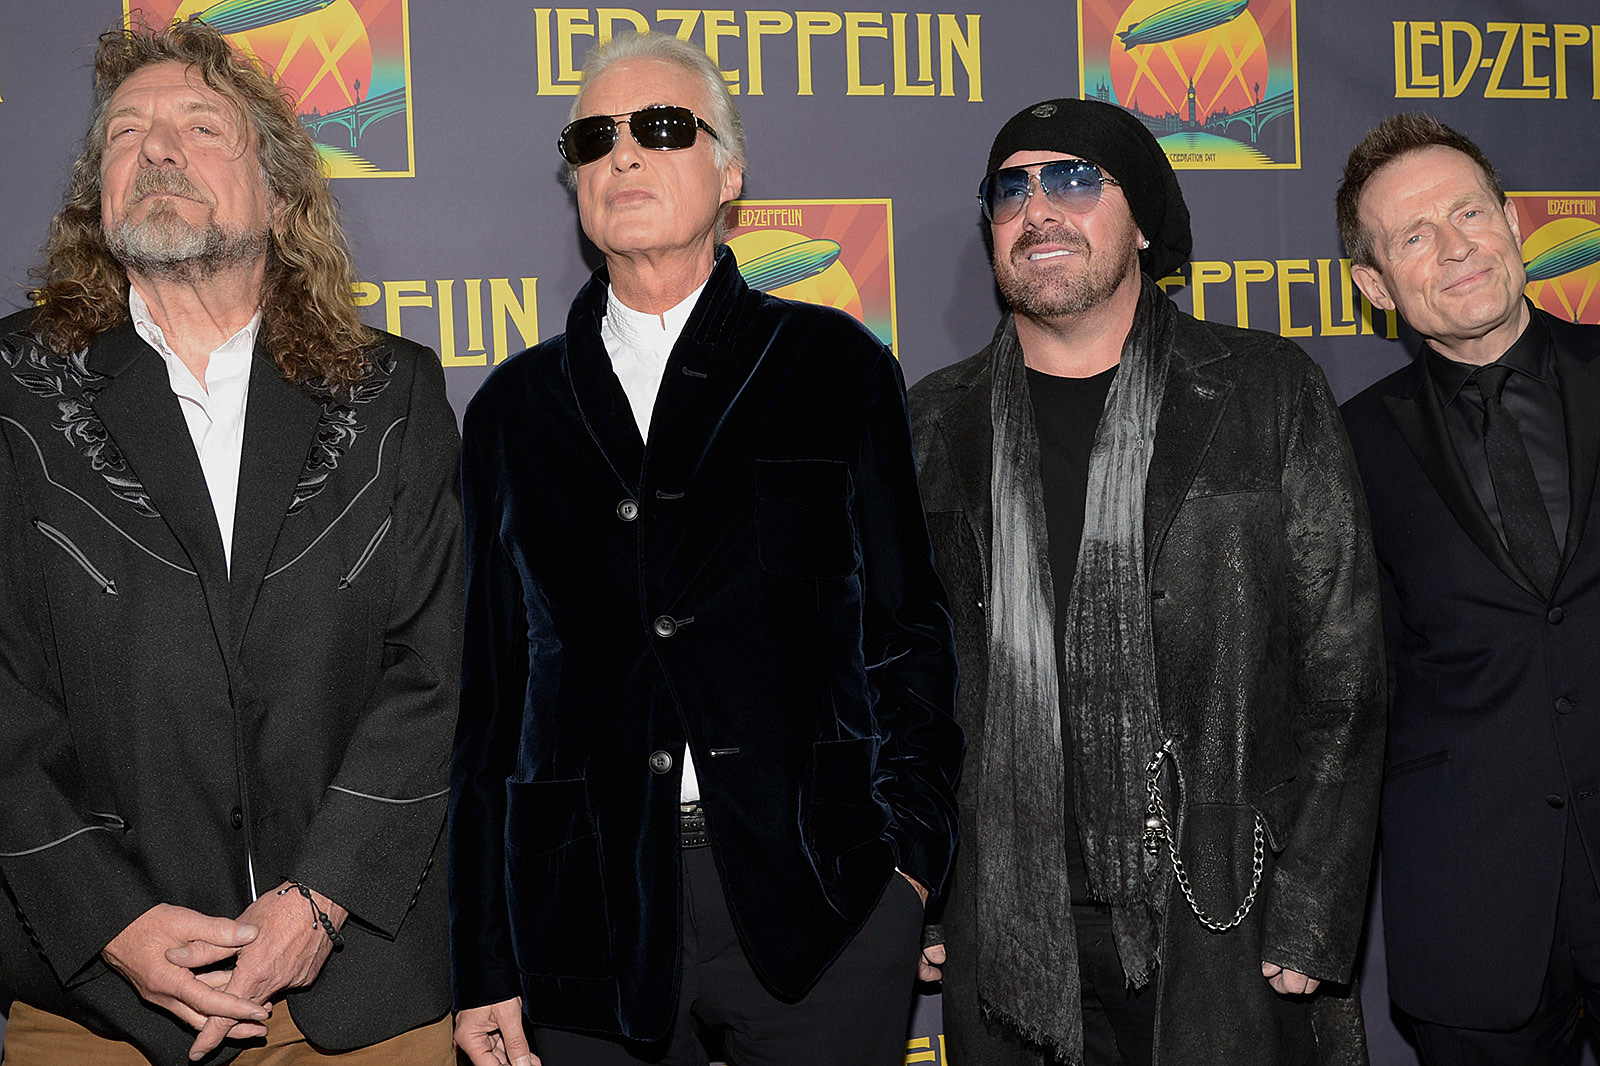 Jason Bonham Reveals Robert Plant’s Favorite Led Zeppelin Song